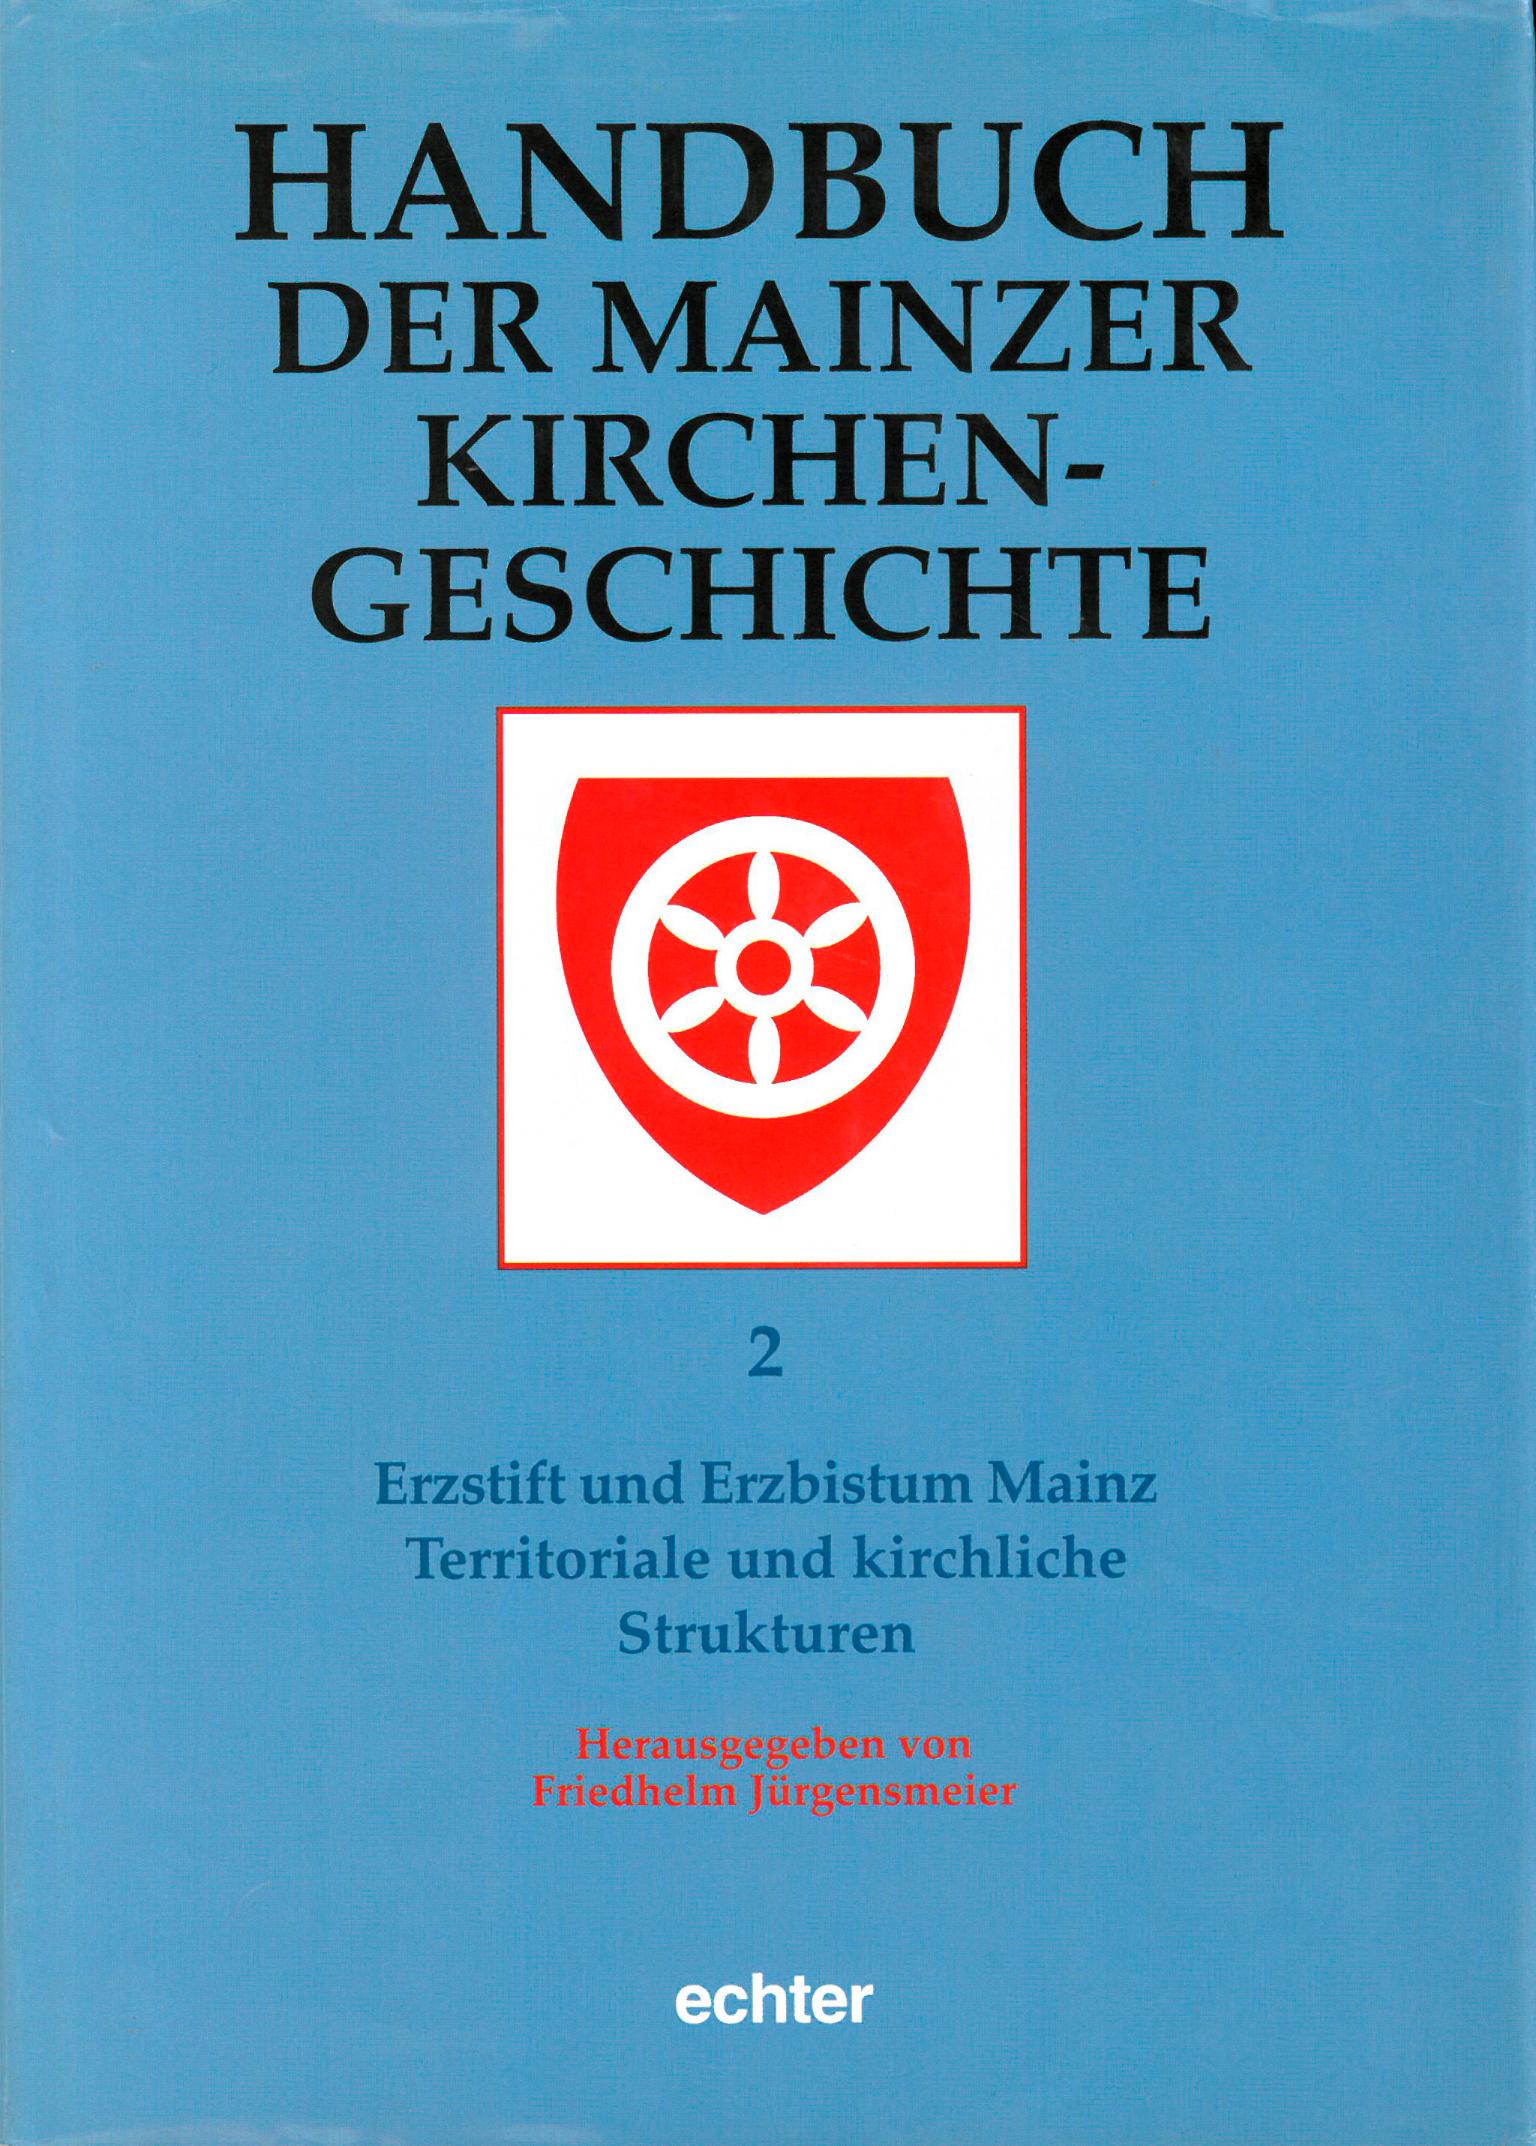 Handbuch II (c) Echter / IMKG